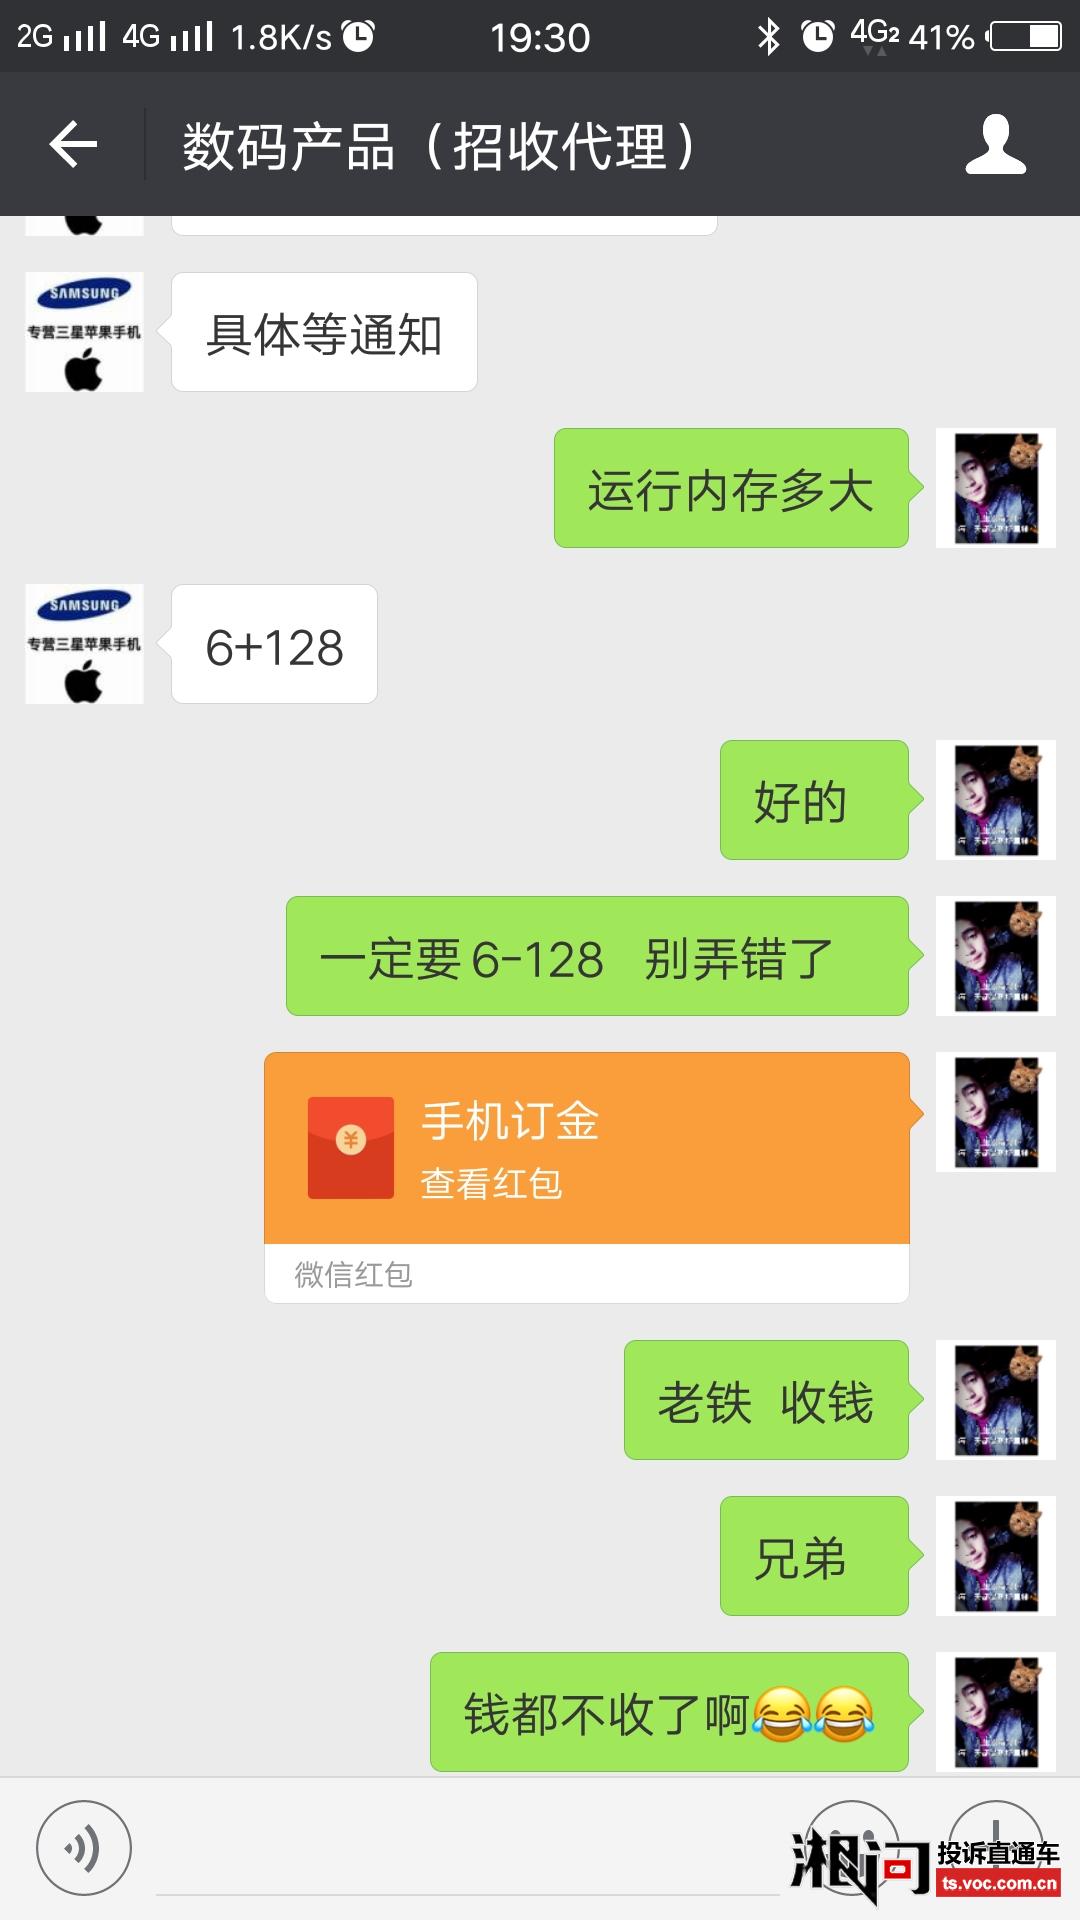 广州晶东贸易有限公司卖假手机骗消费者